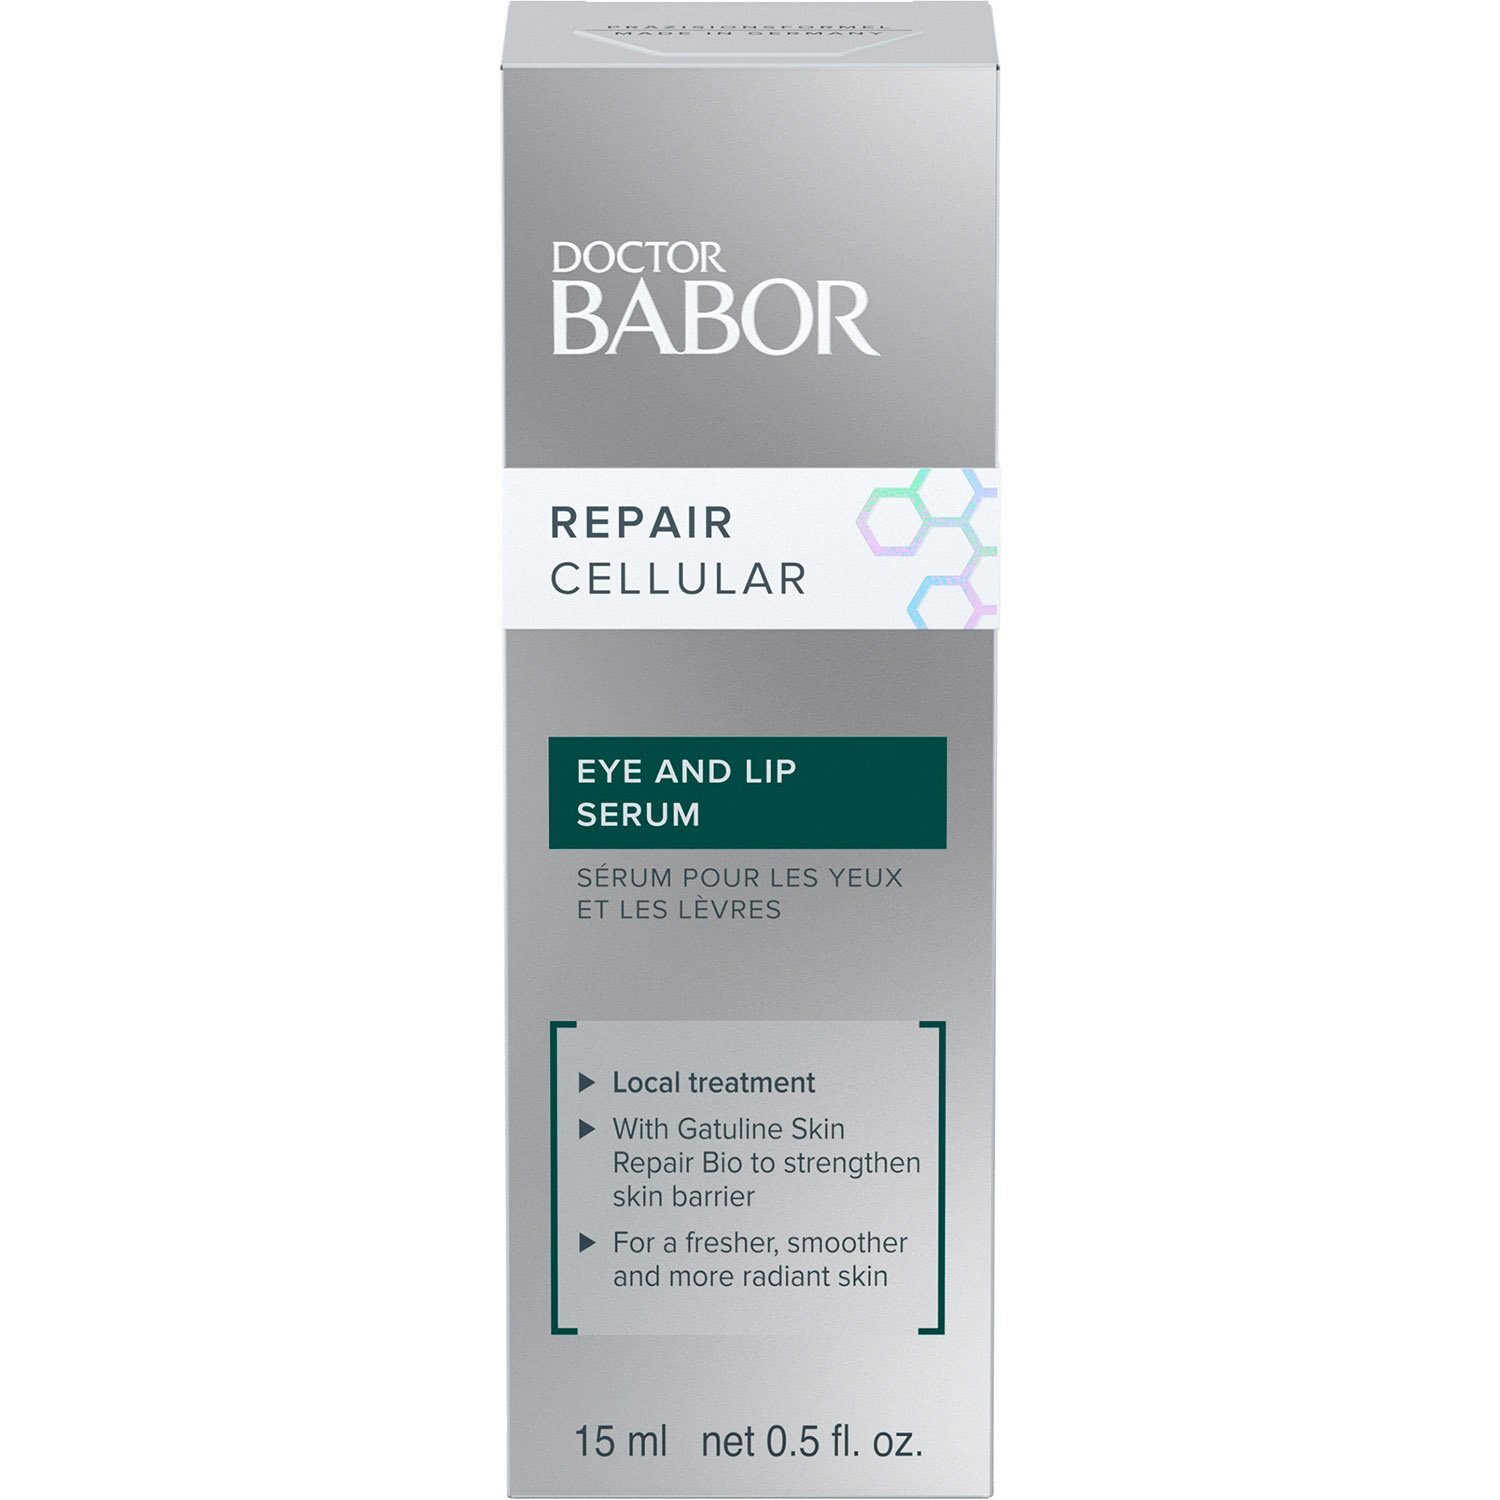 Відновлювальна сироватка Babor Doctor Babor Repair Cellular Repair Eye & Lip Serum для шкіри навколо очей і губ, 15 мл - фото 2